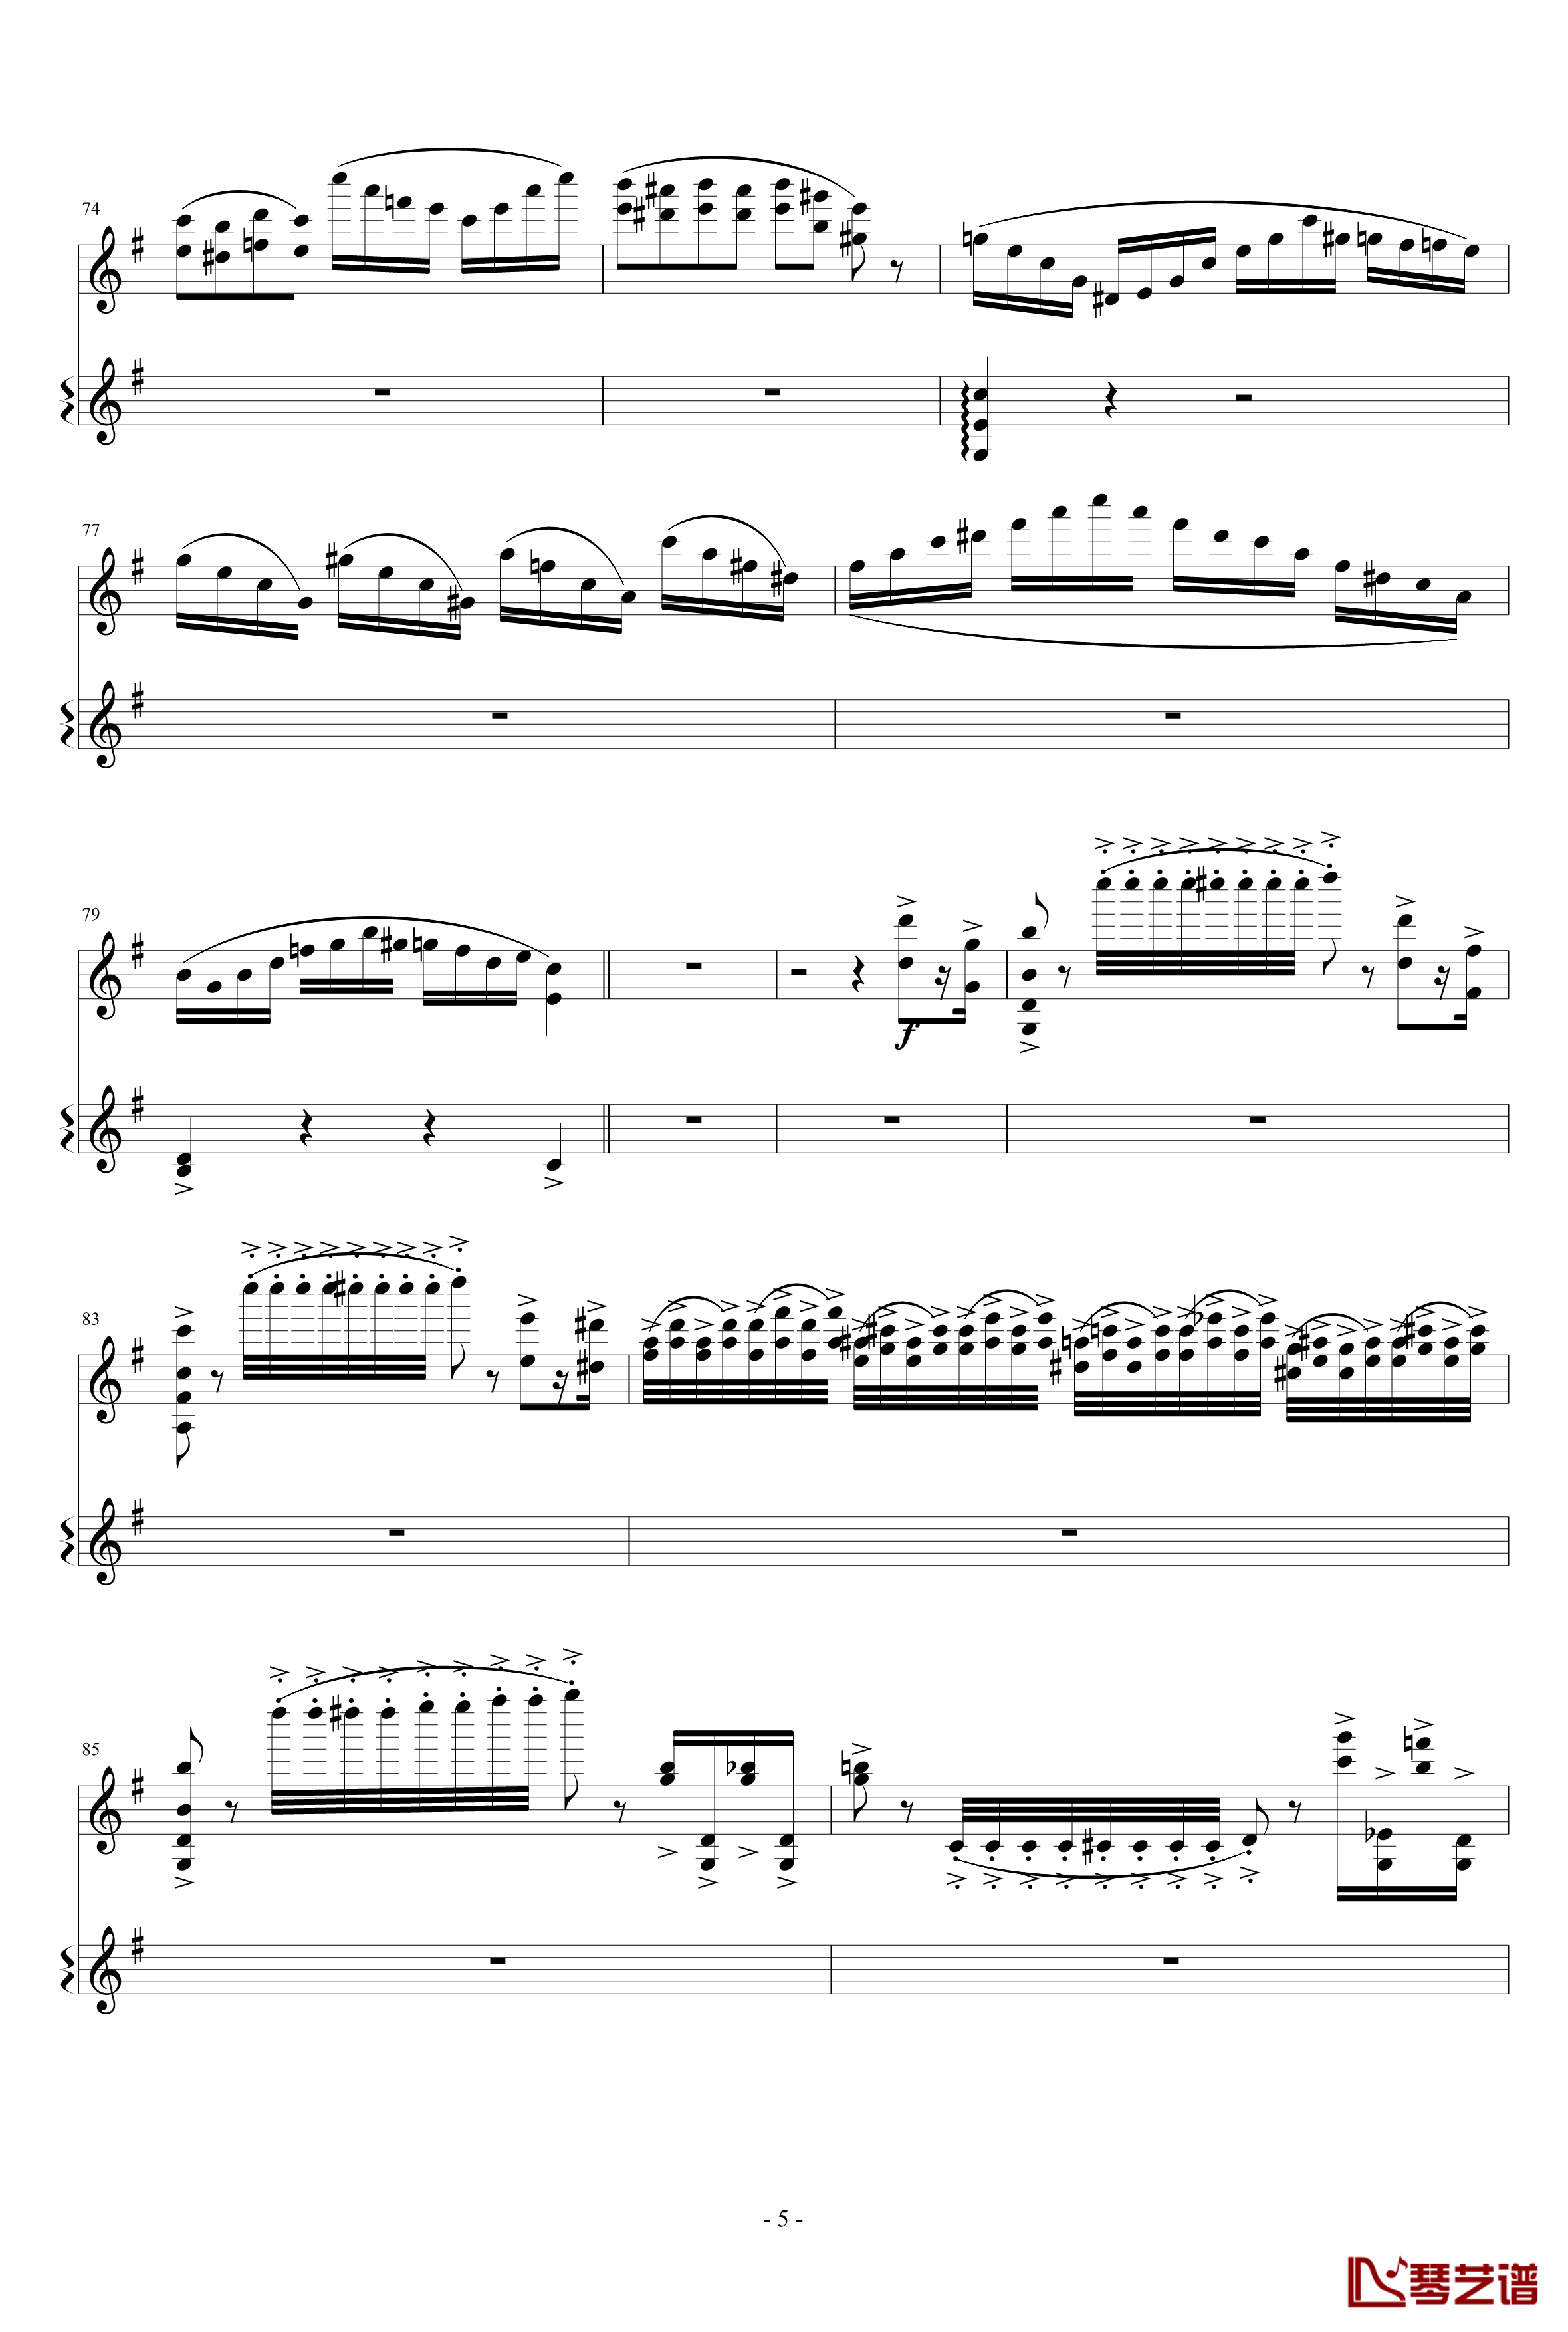 意大利国歌变奏曲钢琴谱-只修改了一个音-DXF5